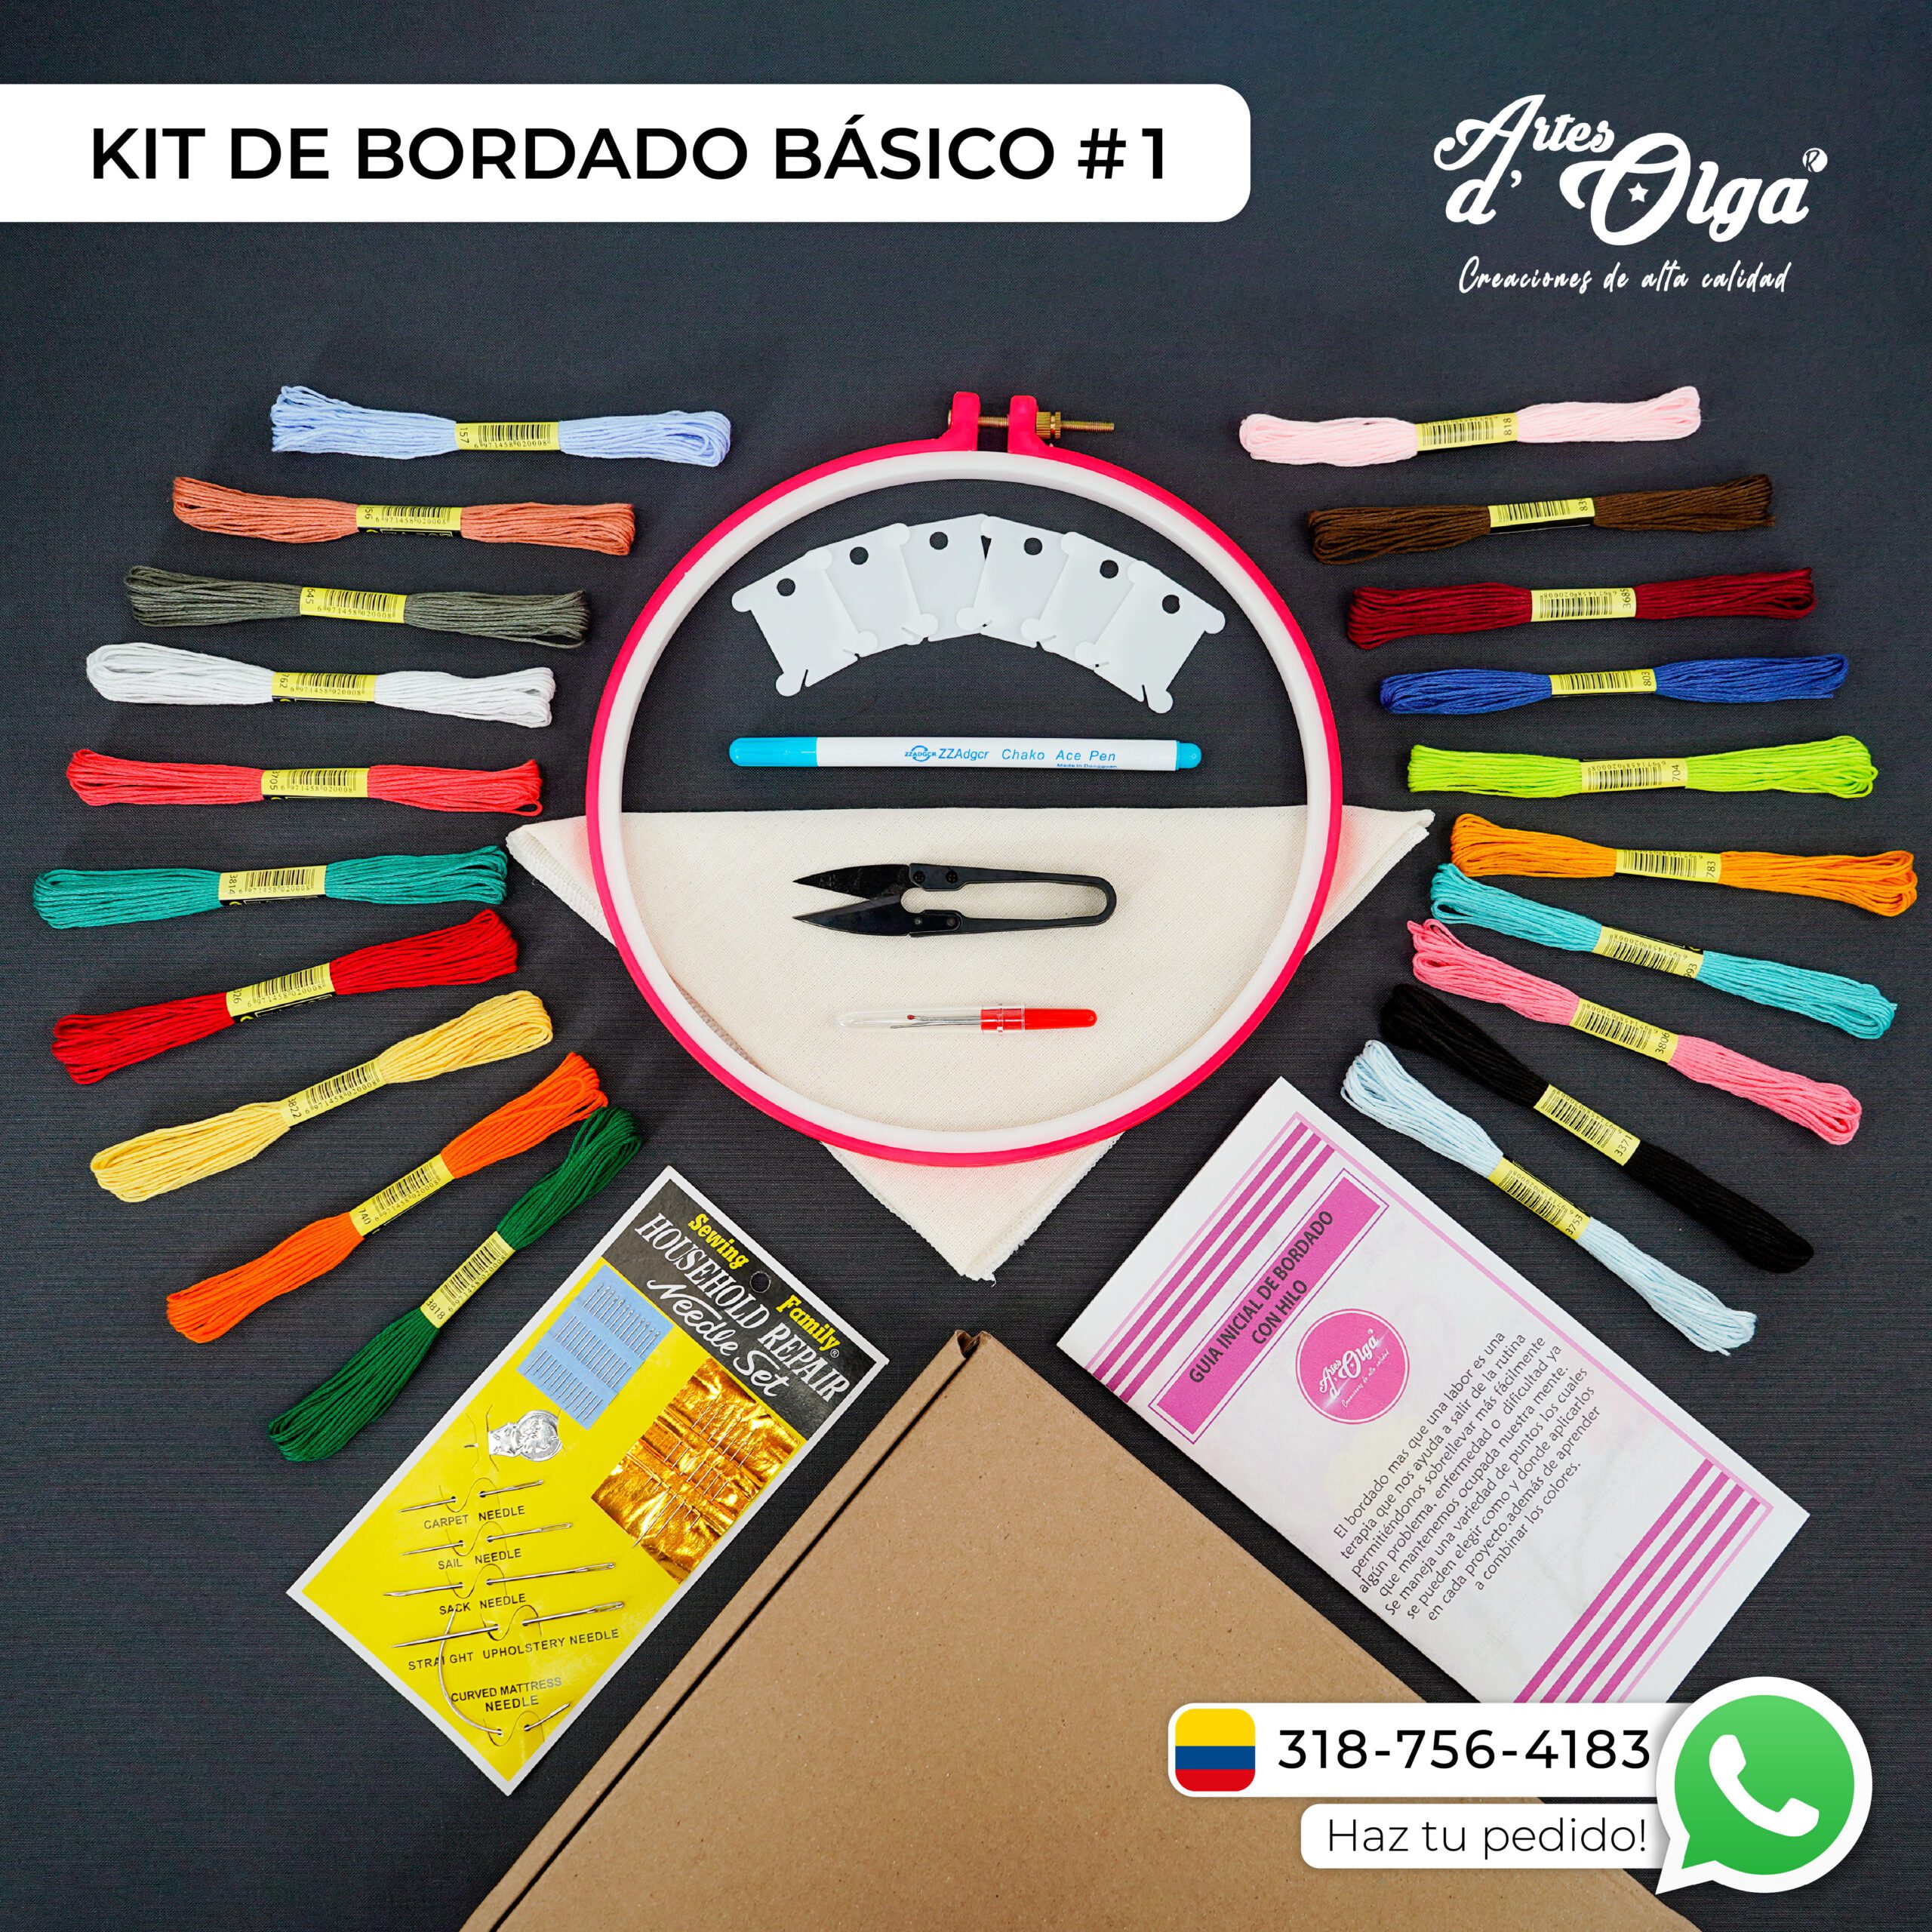 Kit de Bordado Básico #2 – Artesd'Olga - Kits de Bordados